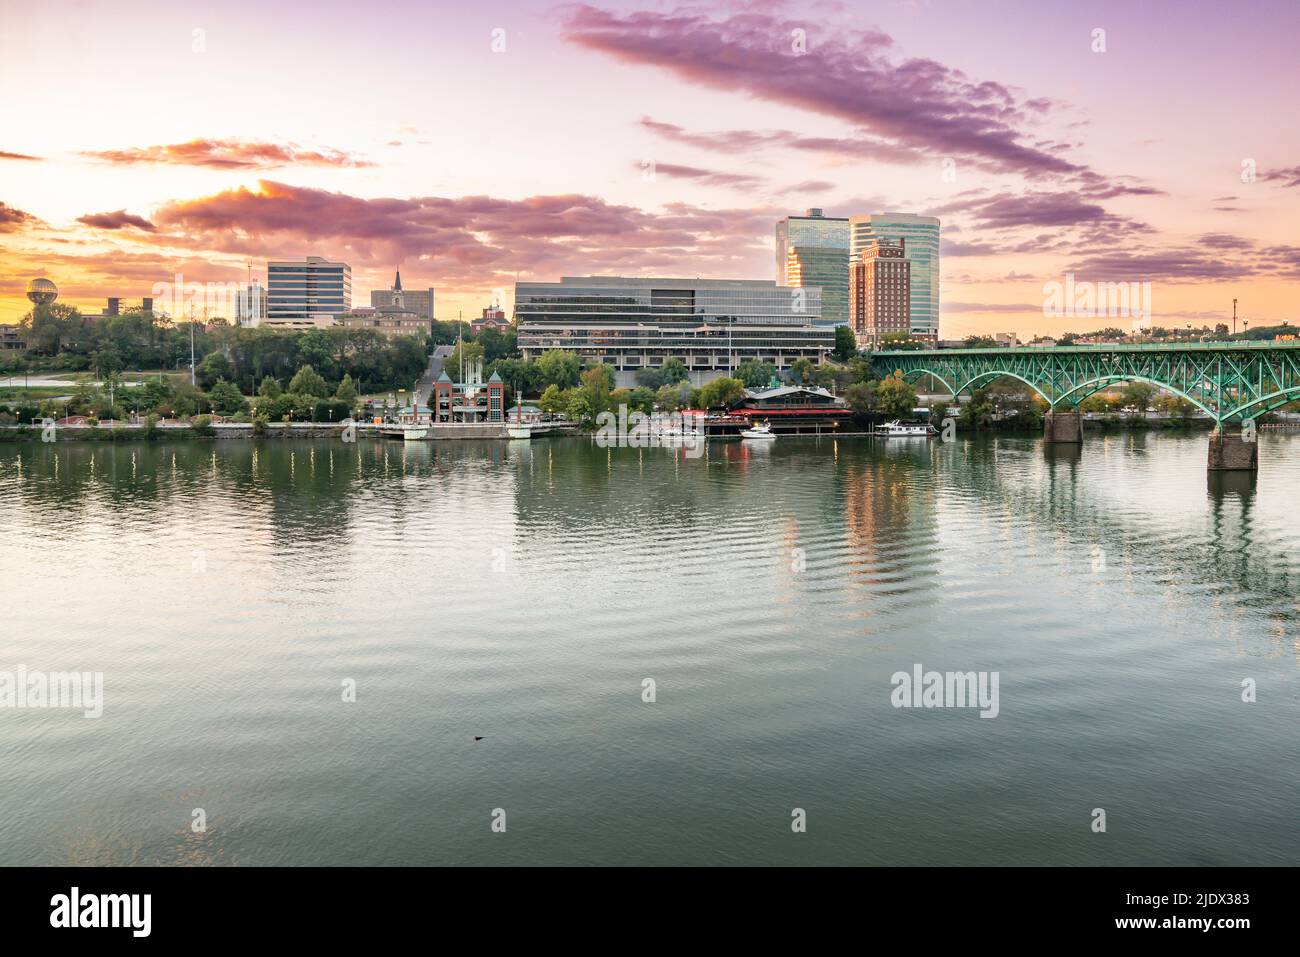 El horizonte de la ciudad de Knoxville a lo largo del río Tennessee al atardecer Foto de stock